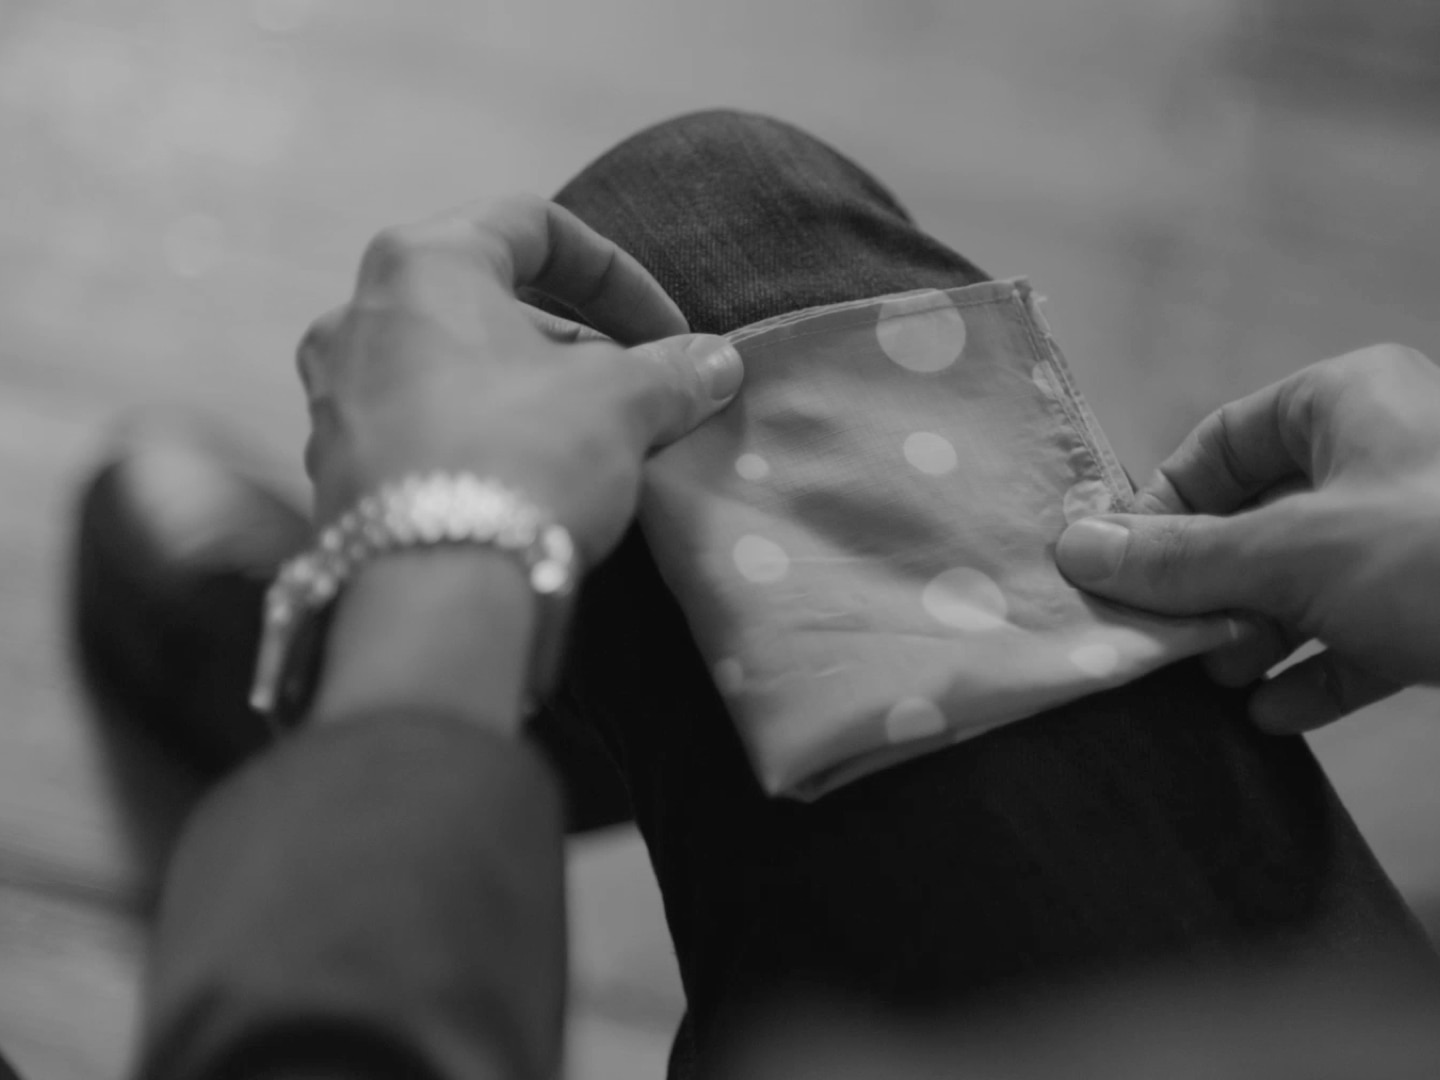 Un hombre con un blazer, ajustando su pañuelo de bolsillo.